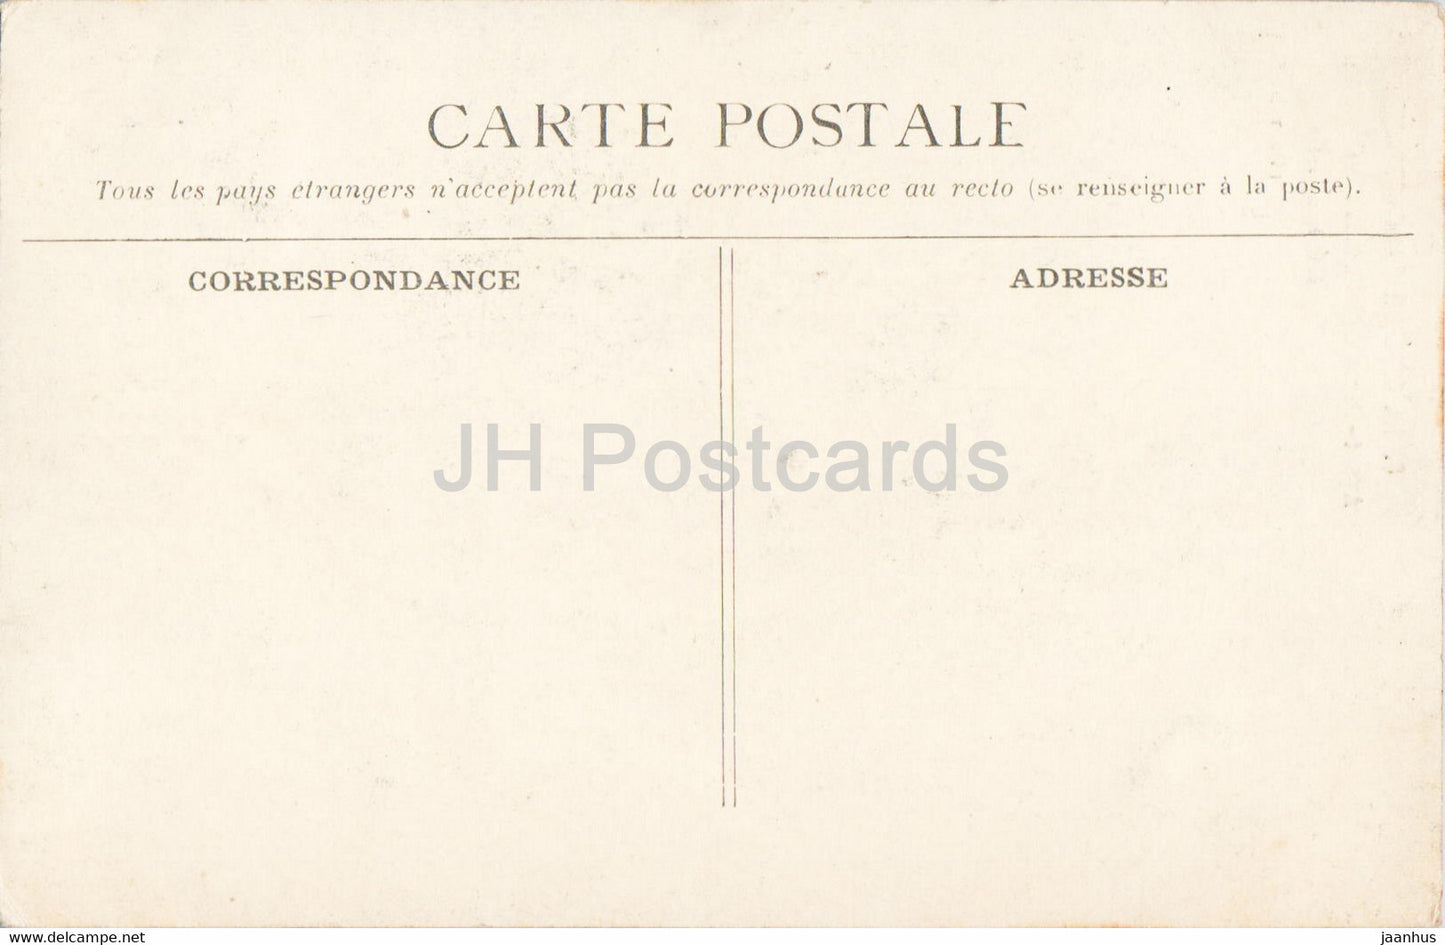 La Cité de Carcassonne - Avant Porte et Défenses du Château - 8 - château - carte postale ancienne - France - inutilisée